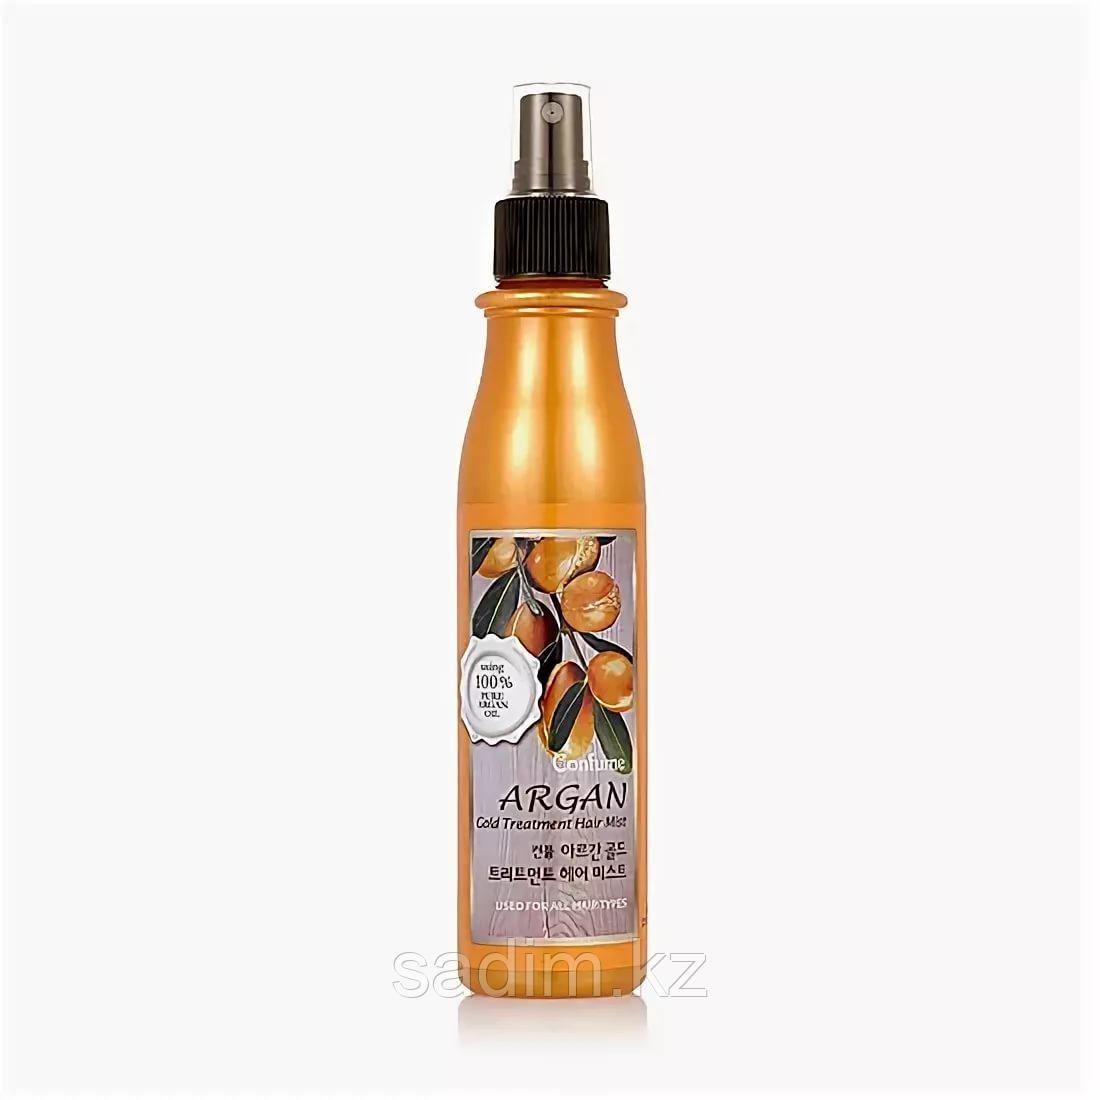 Welcos Confume Argan Gold Treatment Hair Mist -   Спрей для волос с аргановым маслом